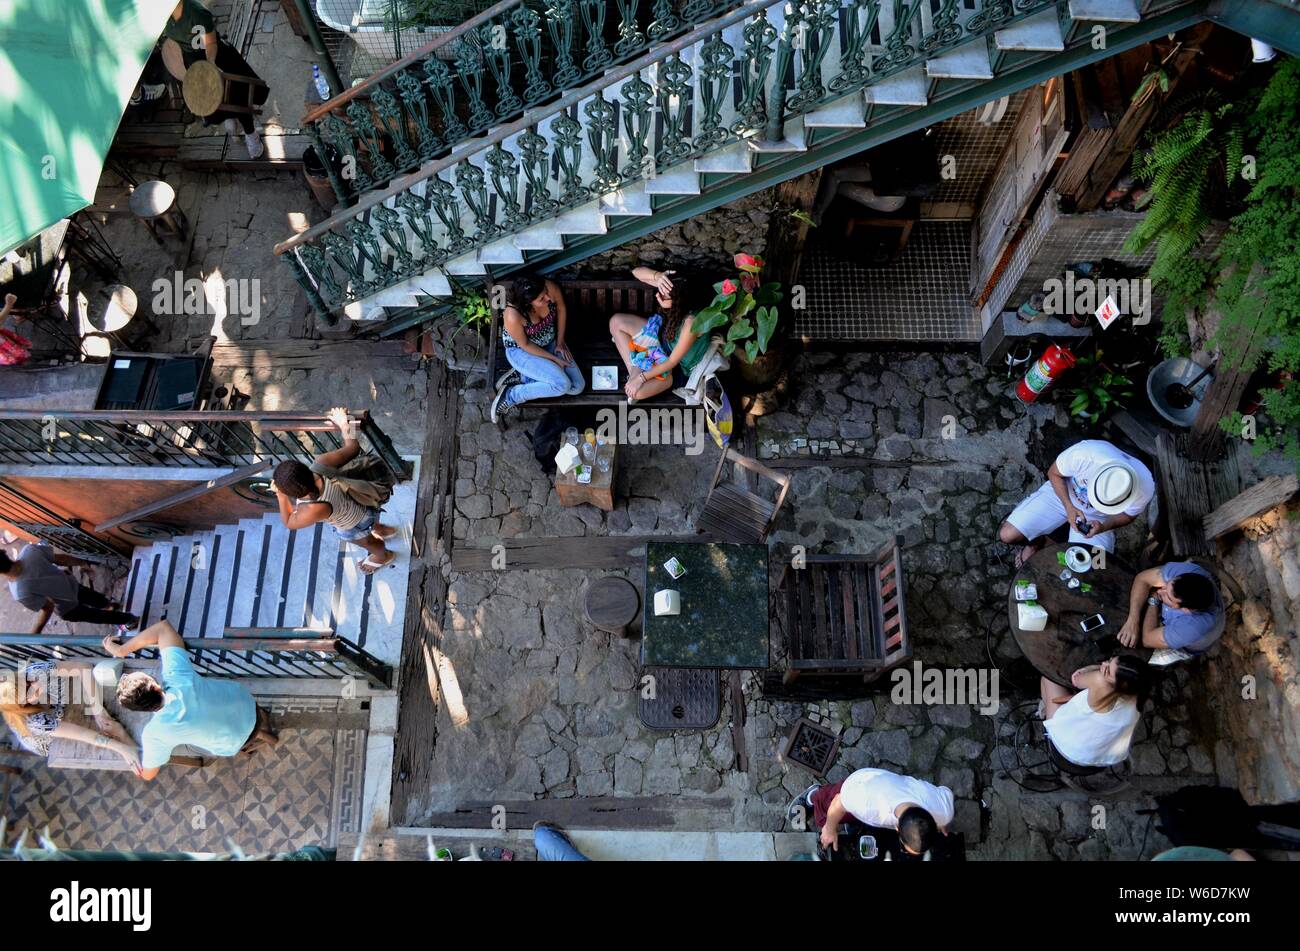 Snapshot from above of the lively Cafecito Cafe in Santa Teresa, Rio de Janeiro, Brazil. Stock Photo